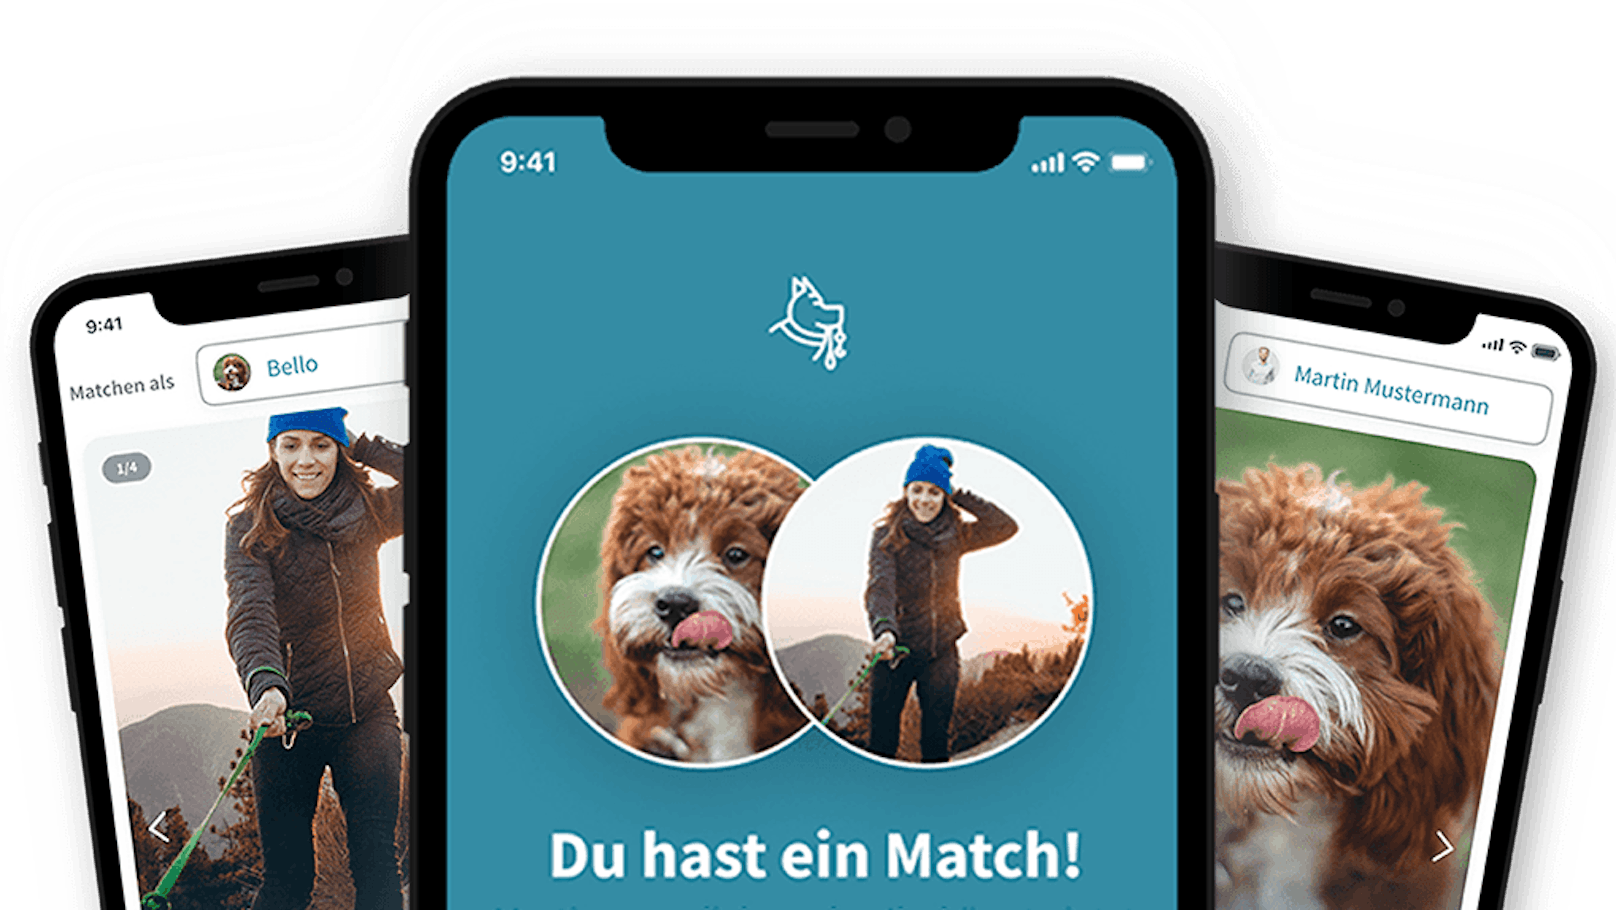 Zwei Jungunternehmer entwickelten eine tolle App - rund um den Hund. 